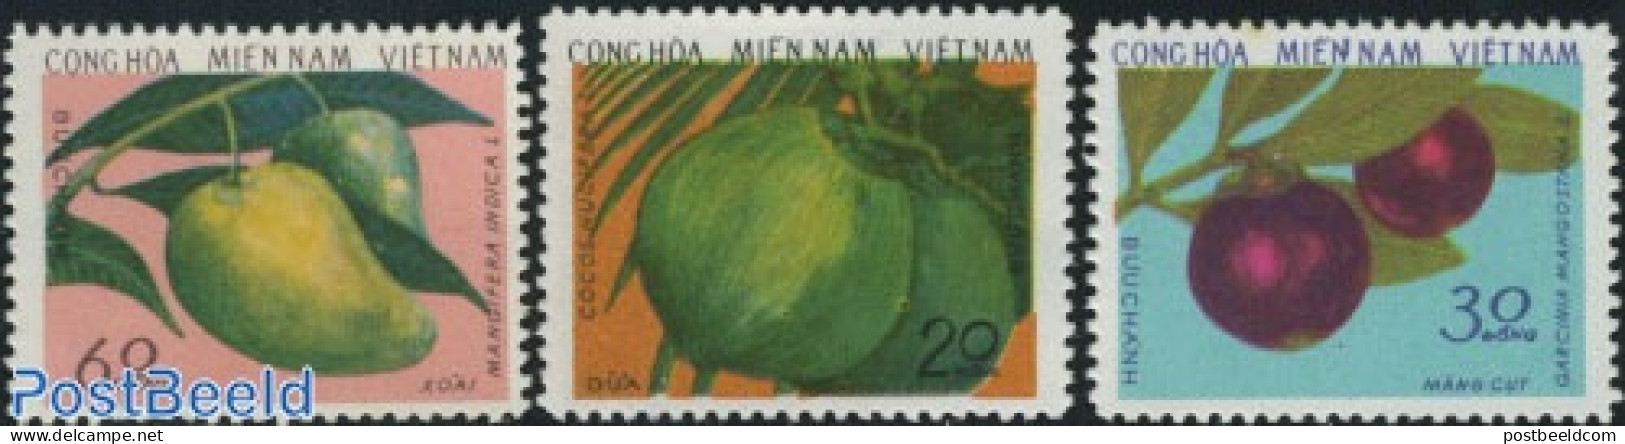 Vietnam 1976 Vietcong, Fruits 3v, Mint NH, Nature - Fruit - Fruits